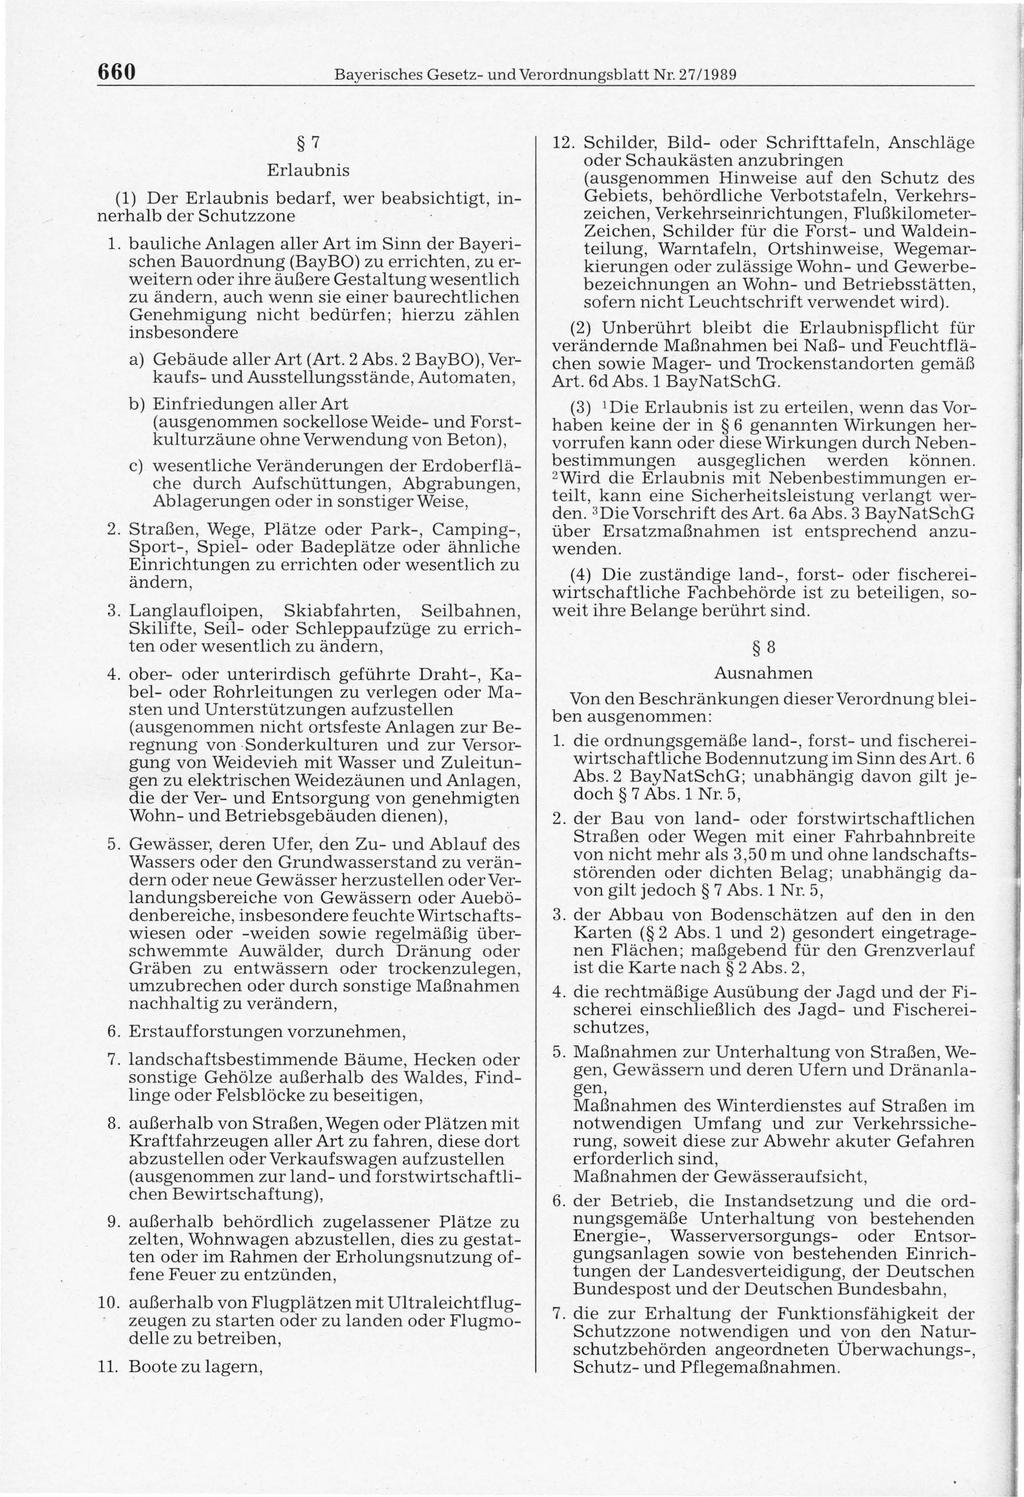 660 Bayerisches Gesetz- und Verordnungsblatt Nr. 27/1989 7 Erlaubnis (1) Der Erlaubnis bedarf, wer beabsichtigt, innerhalb der Schutzzone 1.